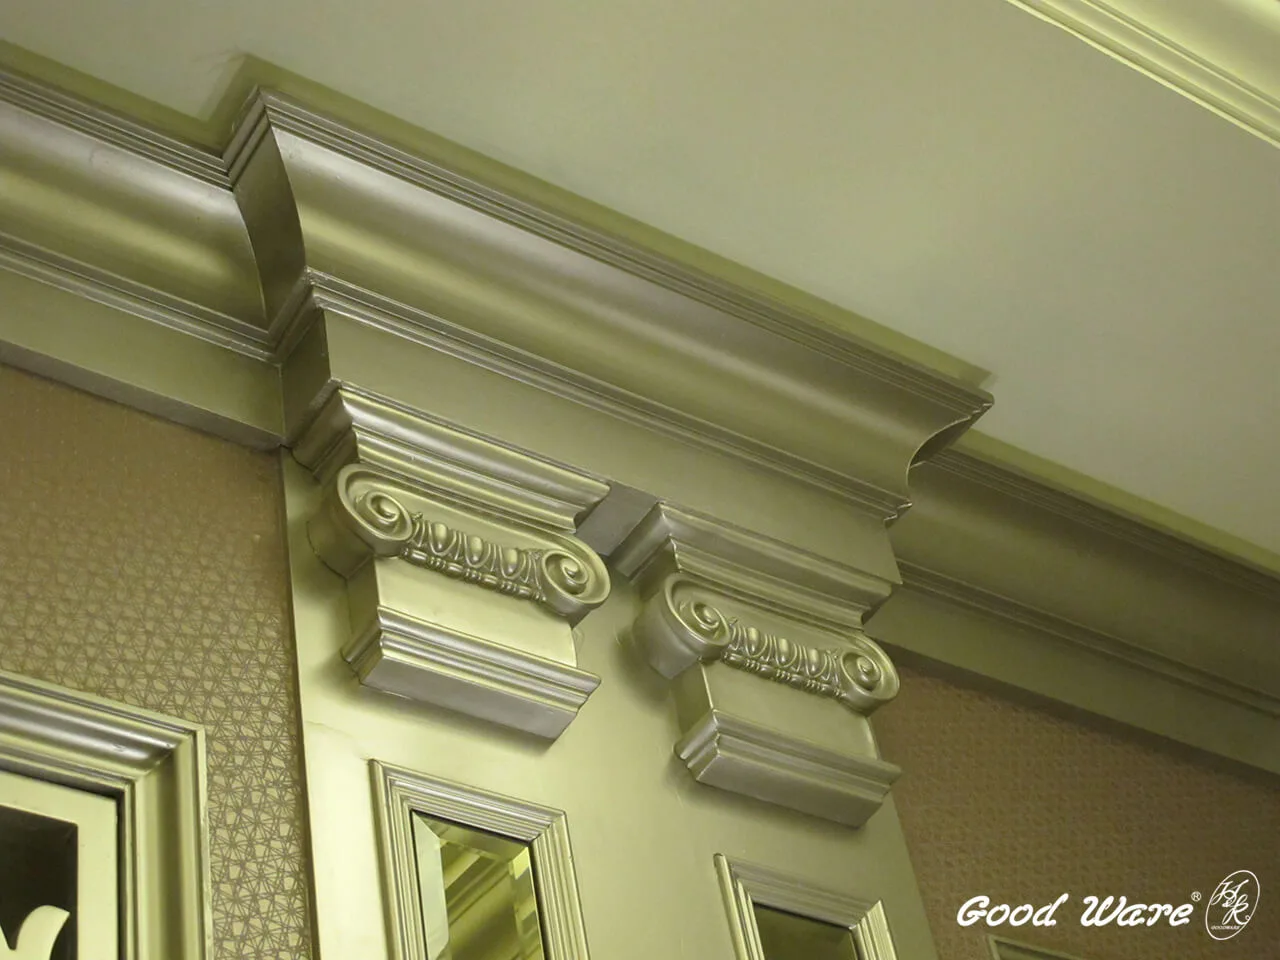 上金色漆料的平面羅馬柱與角線板修飾柱面